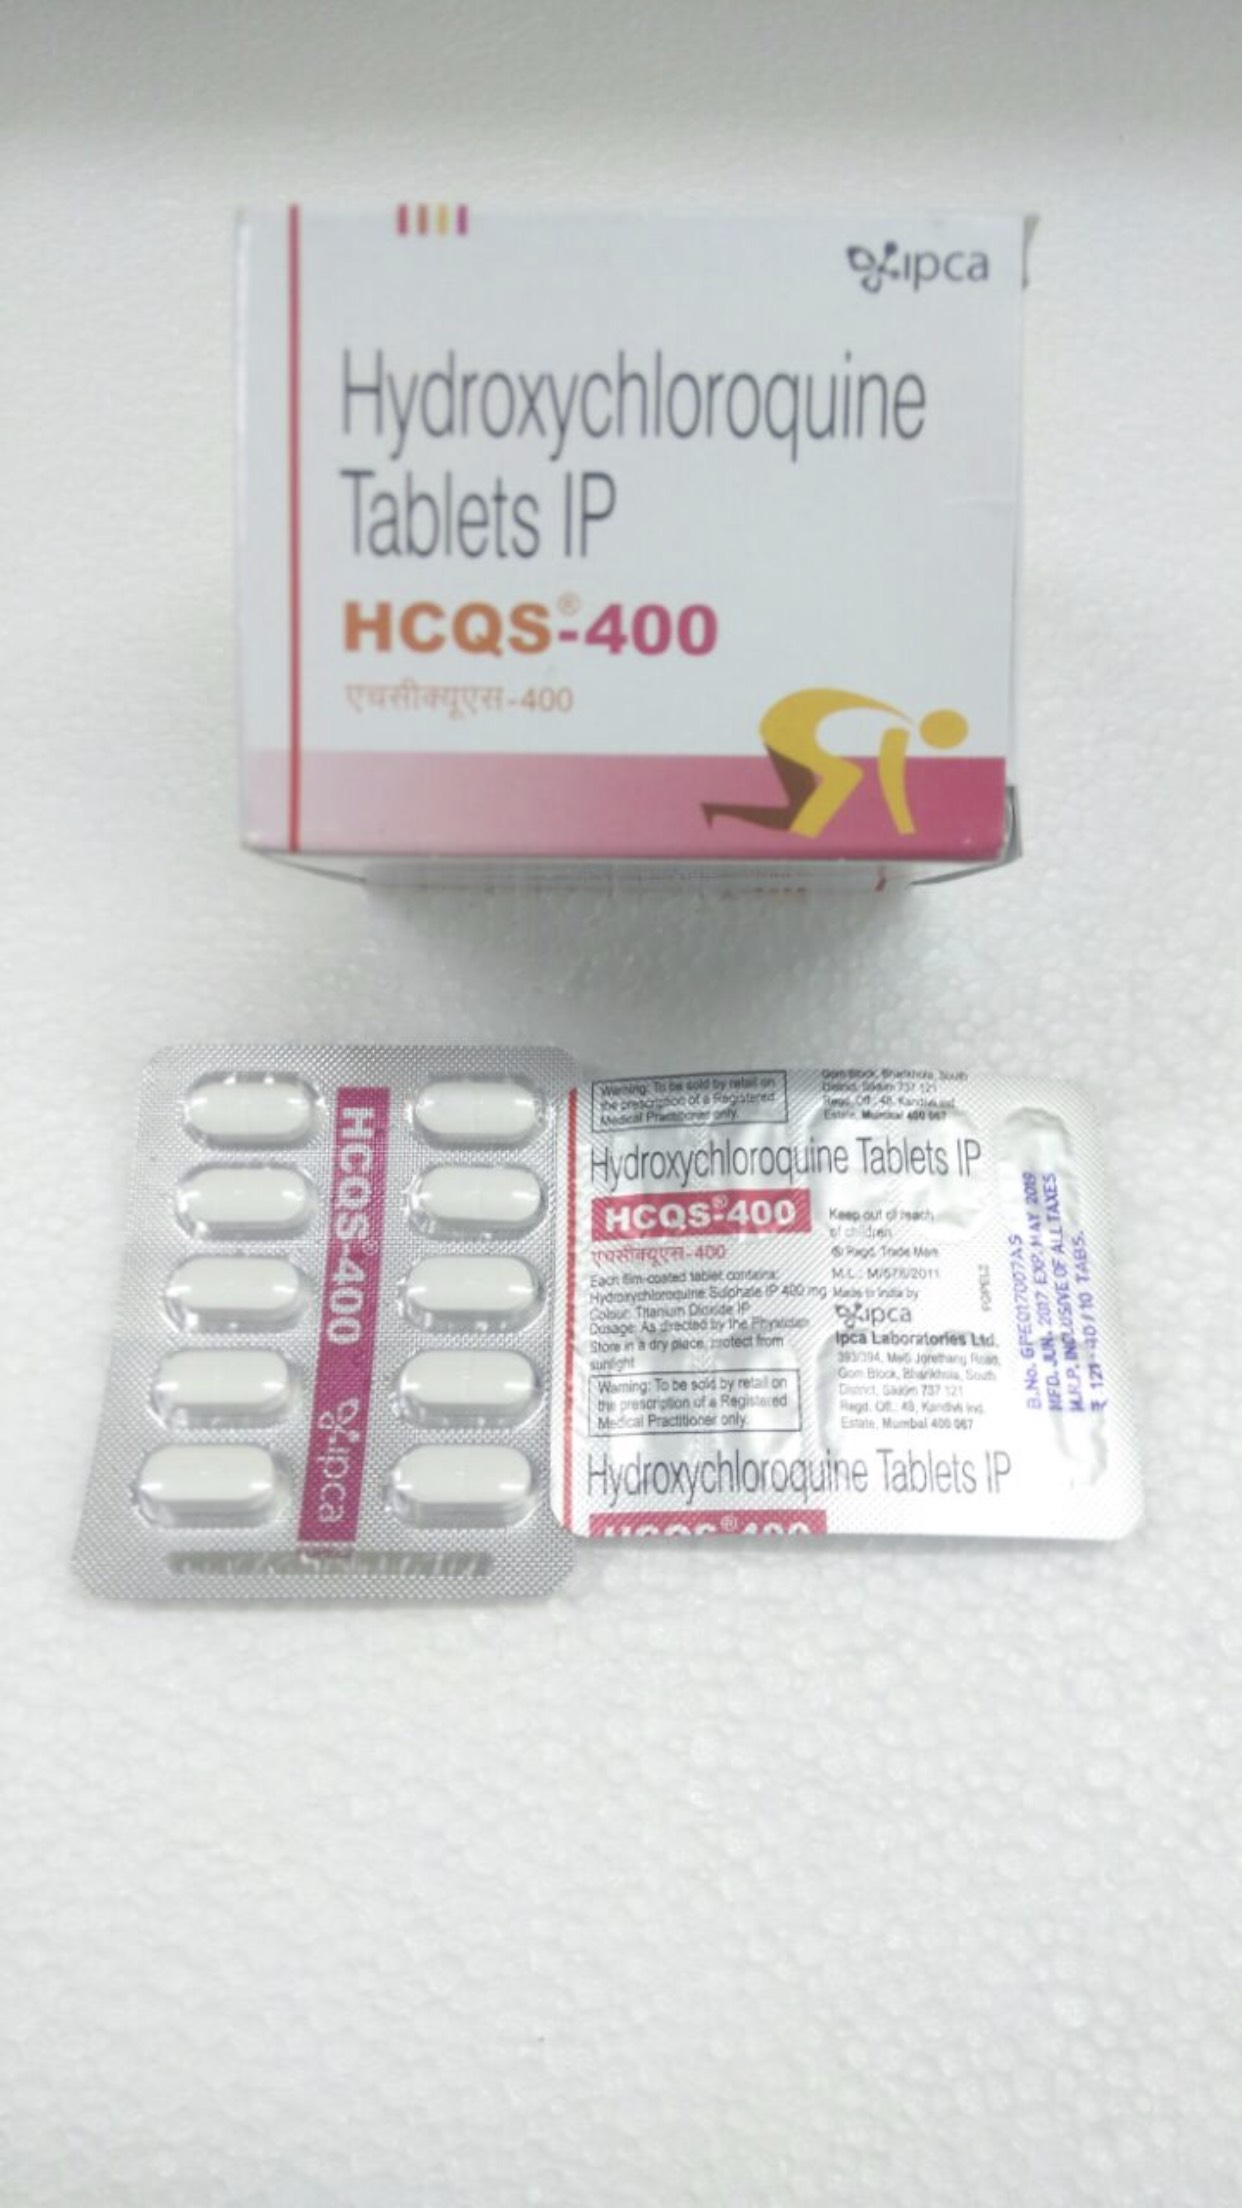 HCQS-400